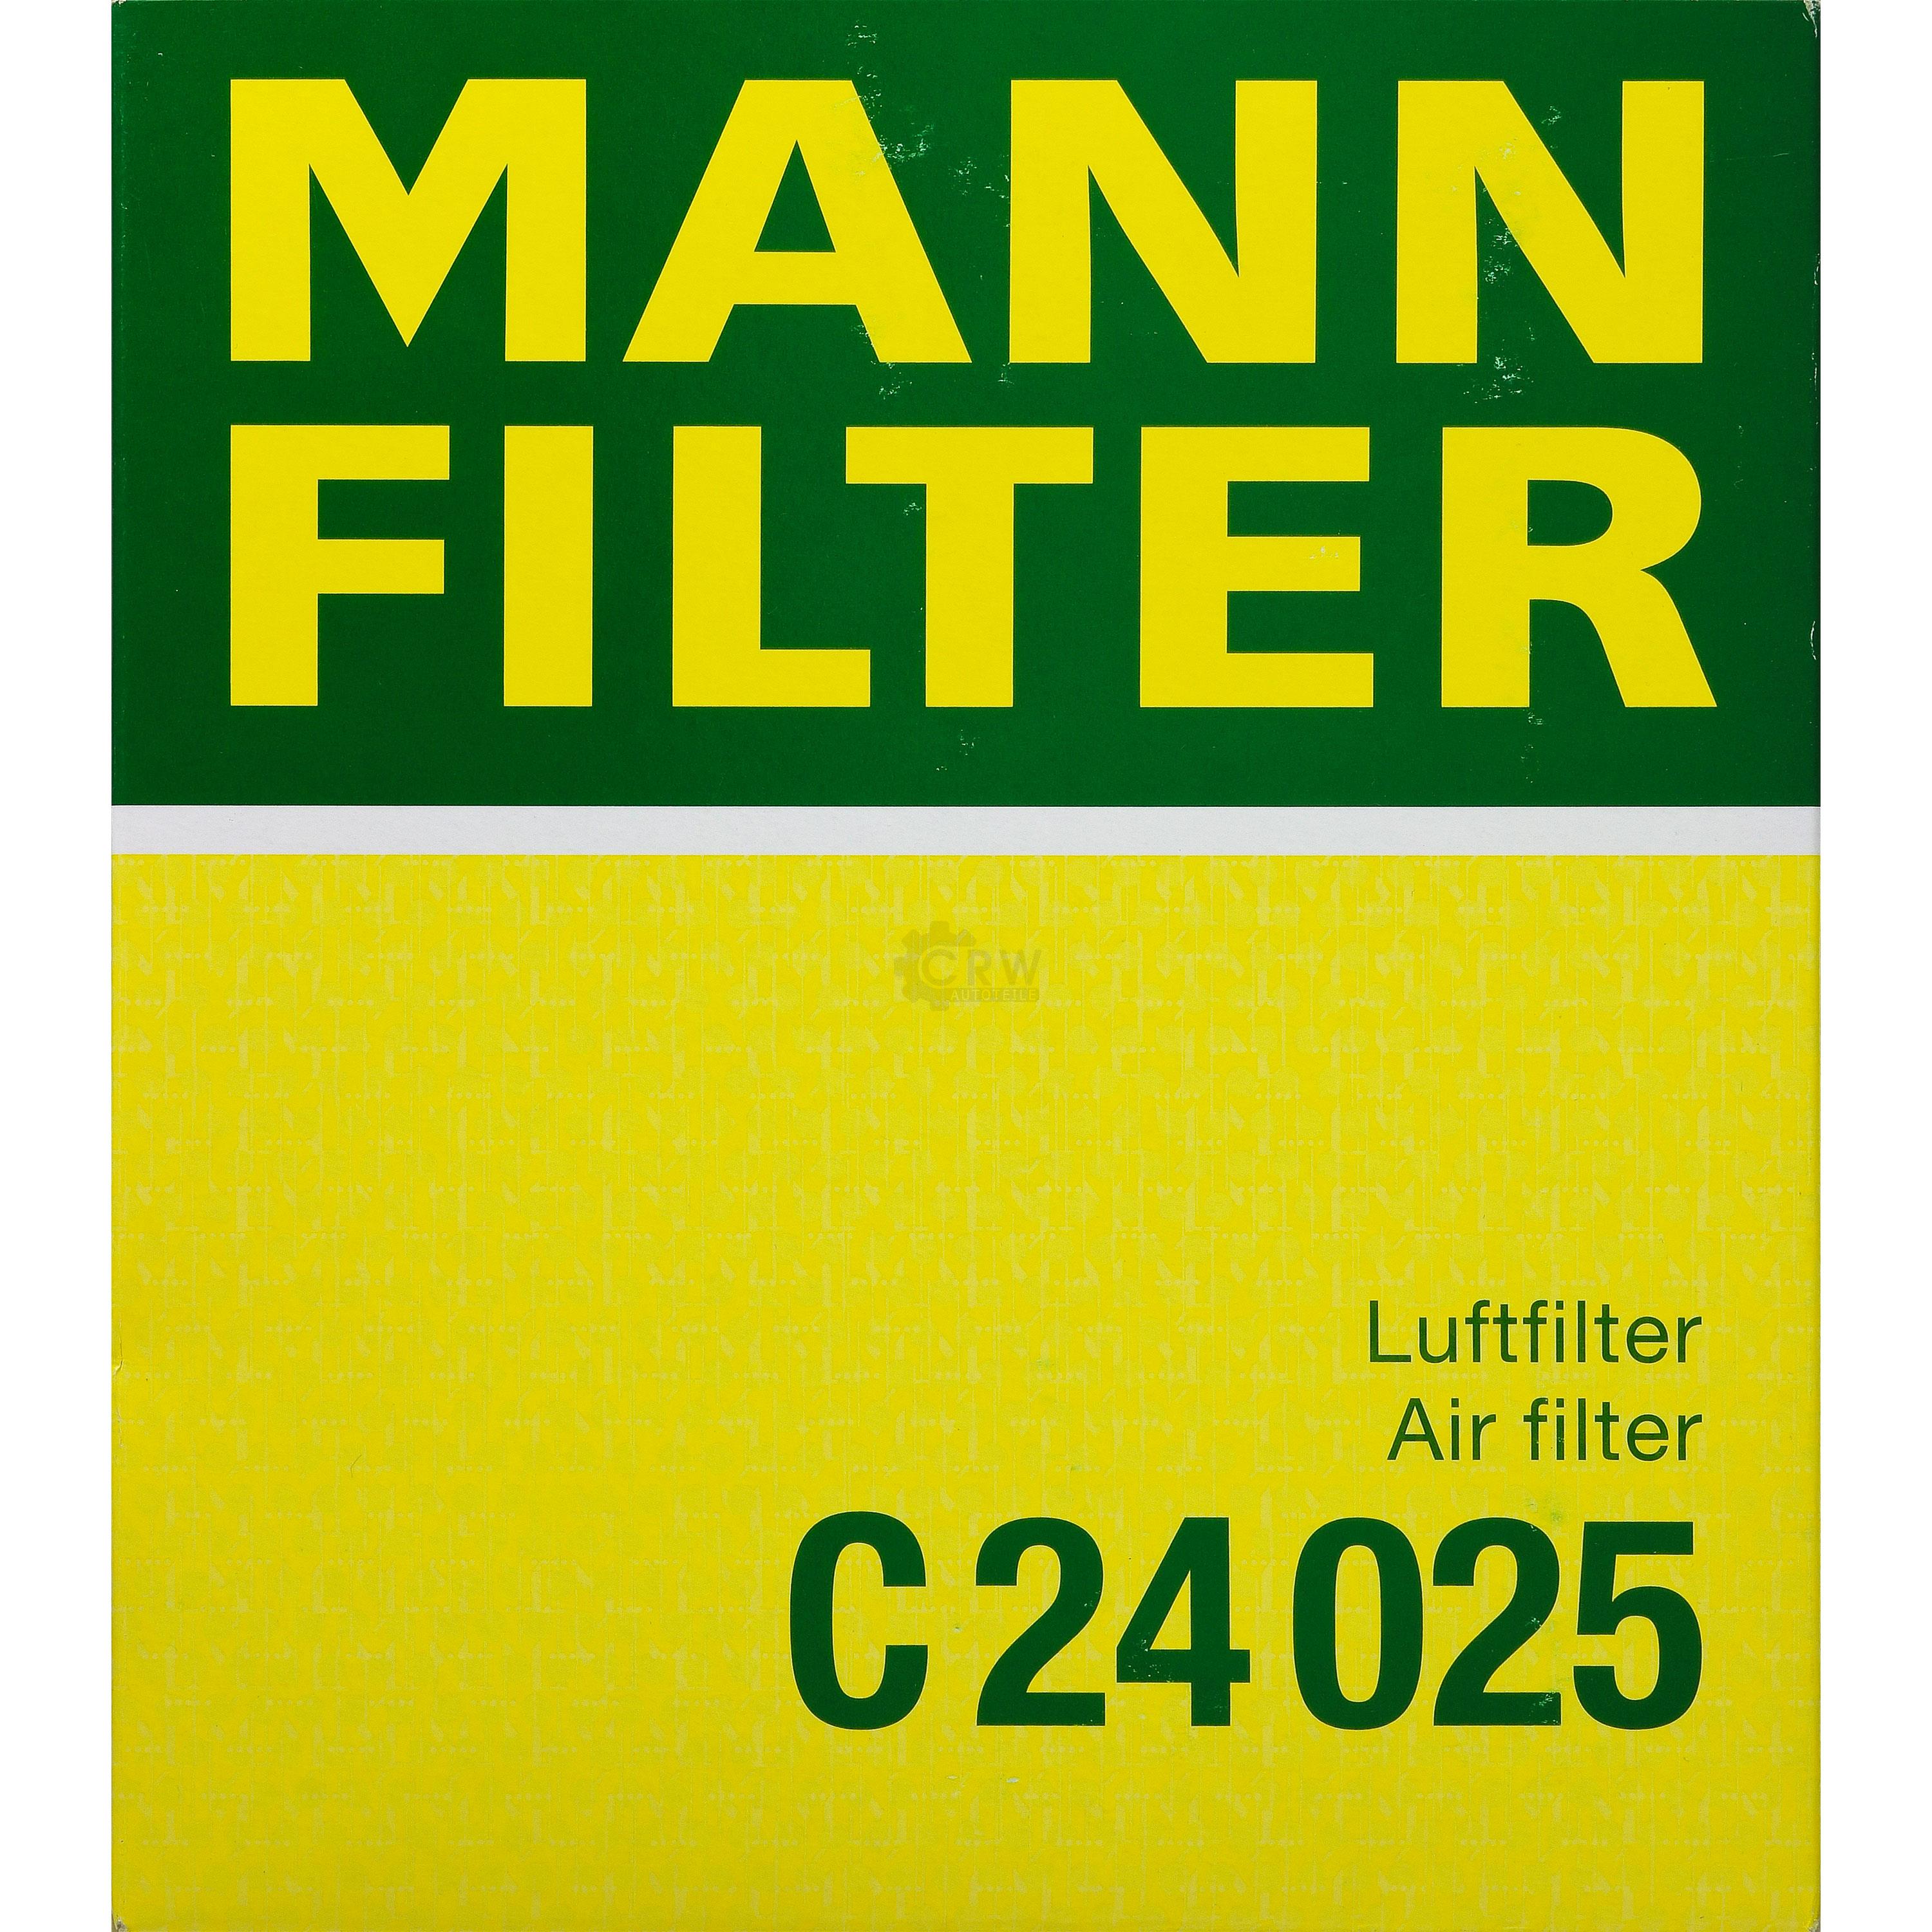 MANN-FILTER Luftfilter für BMW 1er F20 118i 116i F21 114i 3er Touring F31 320i